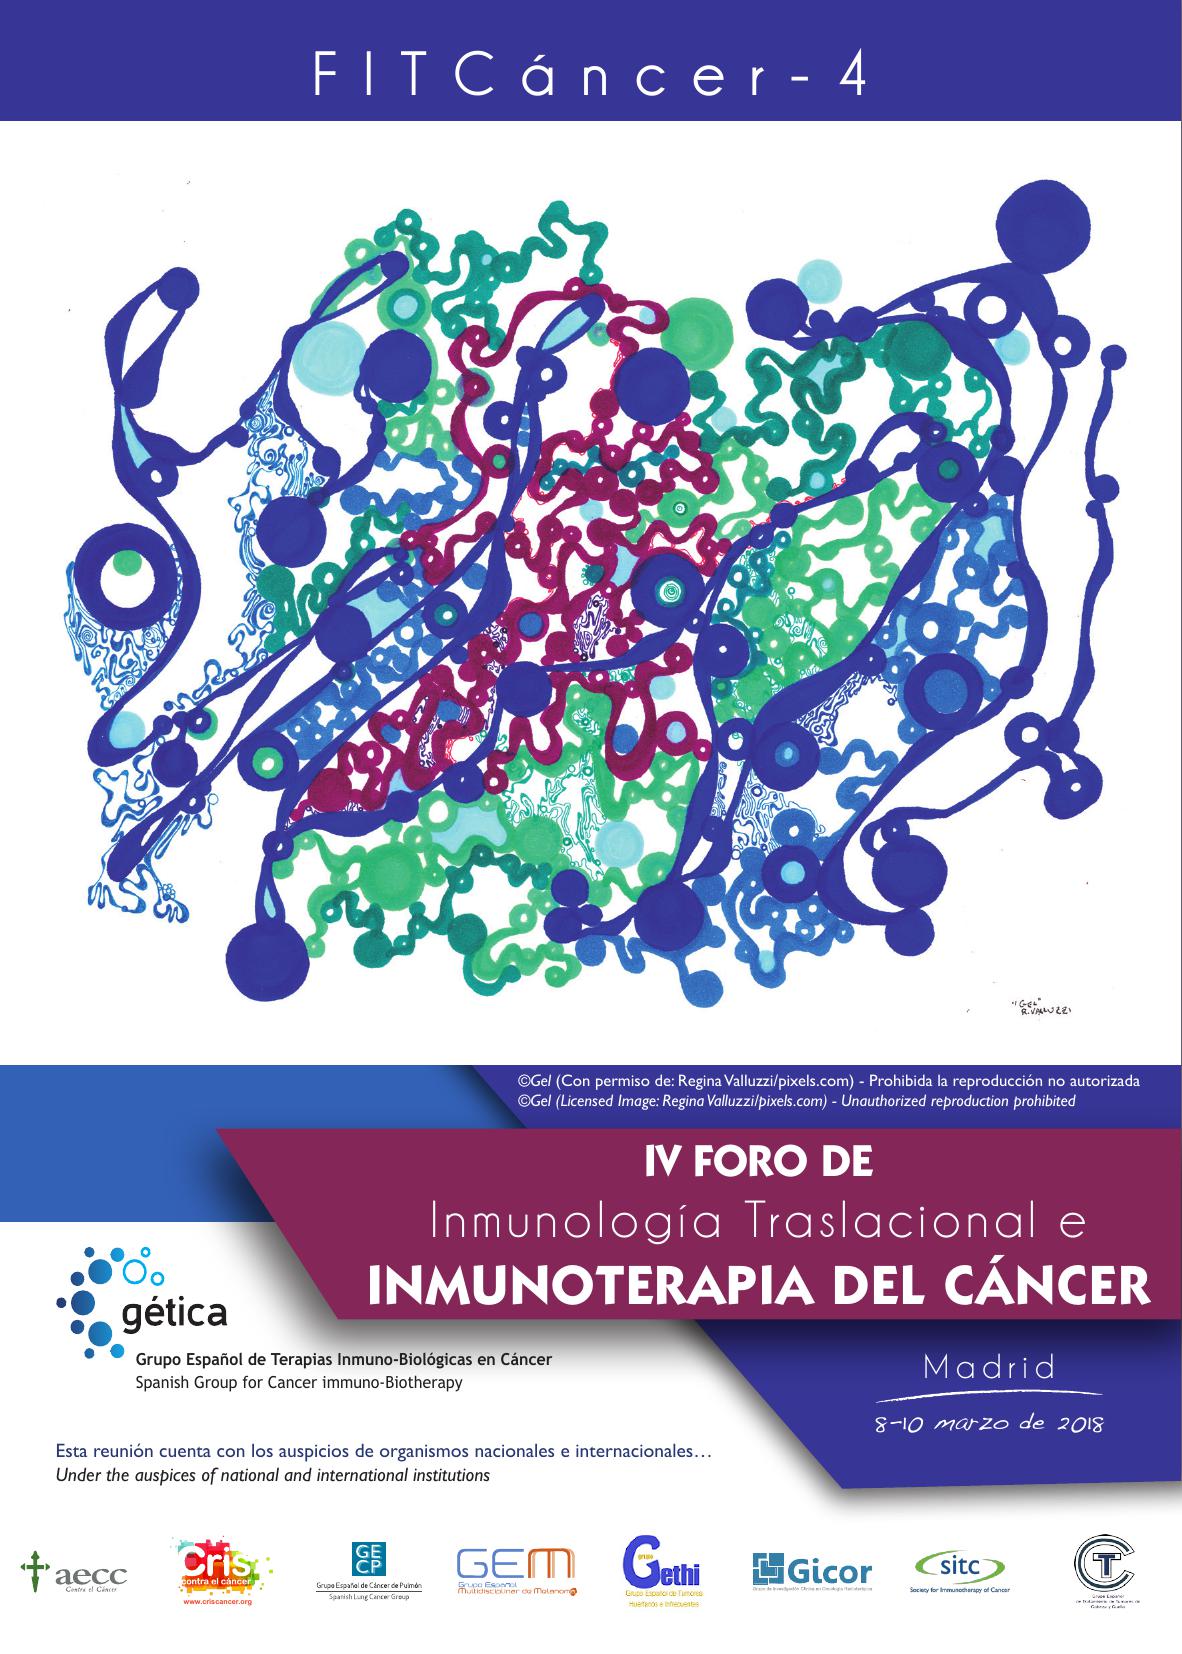 Poster: F I T C á n c e r - 4 IV FORO DE Inmunología Traslacional e Inmunoterapia del Cáncer